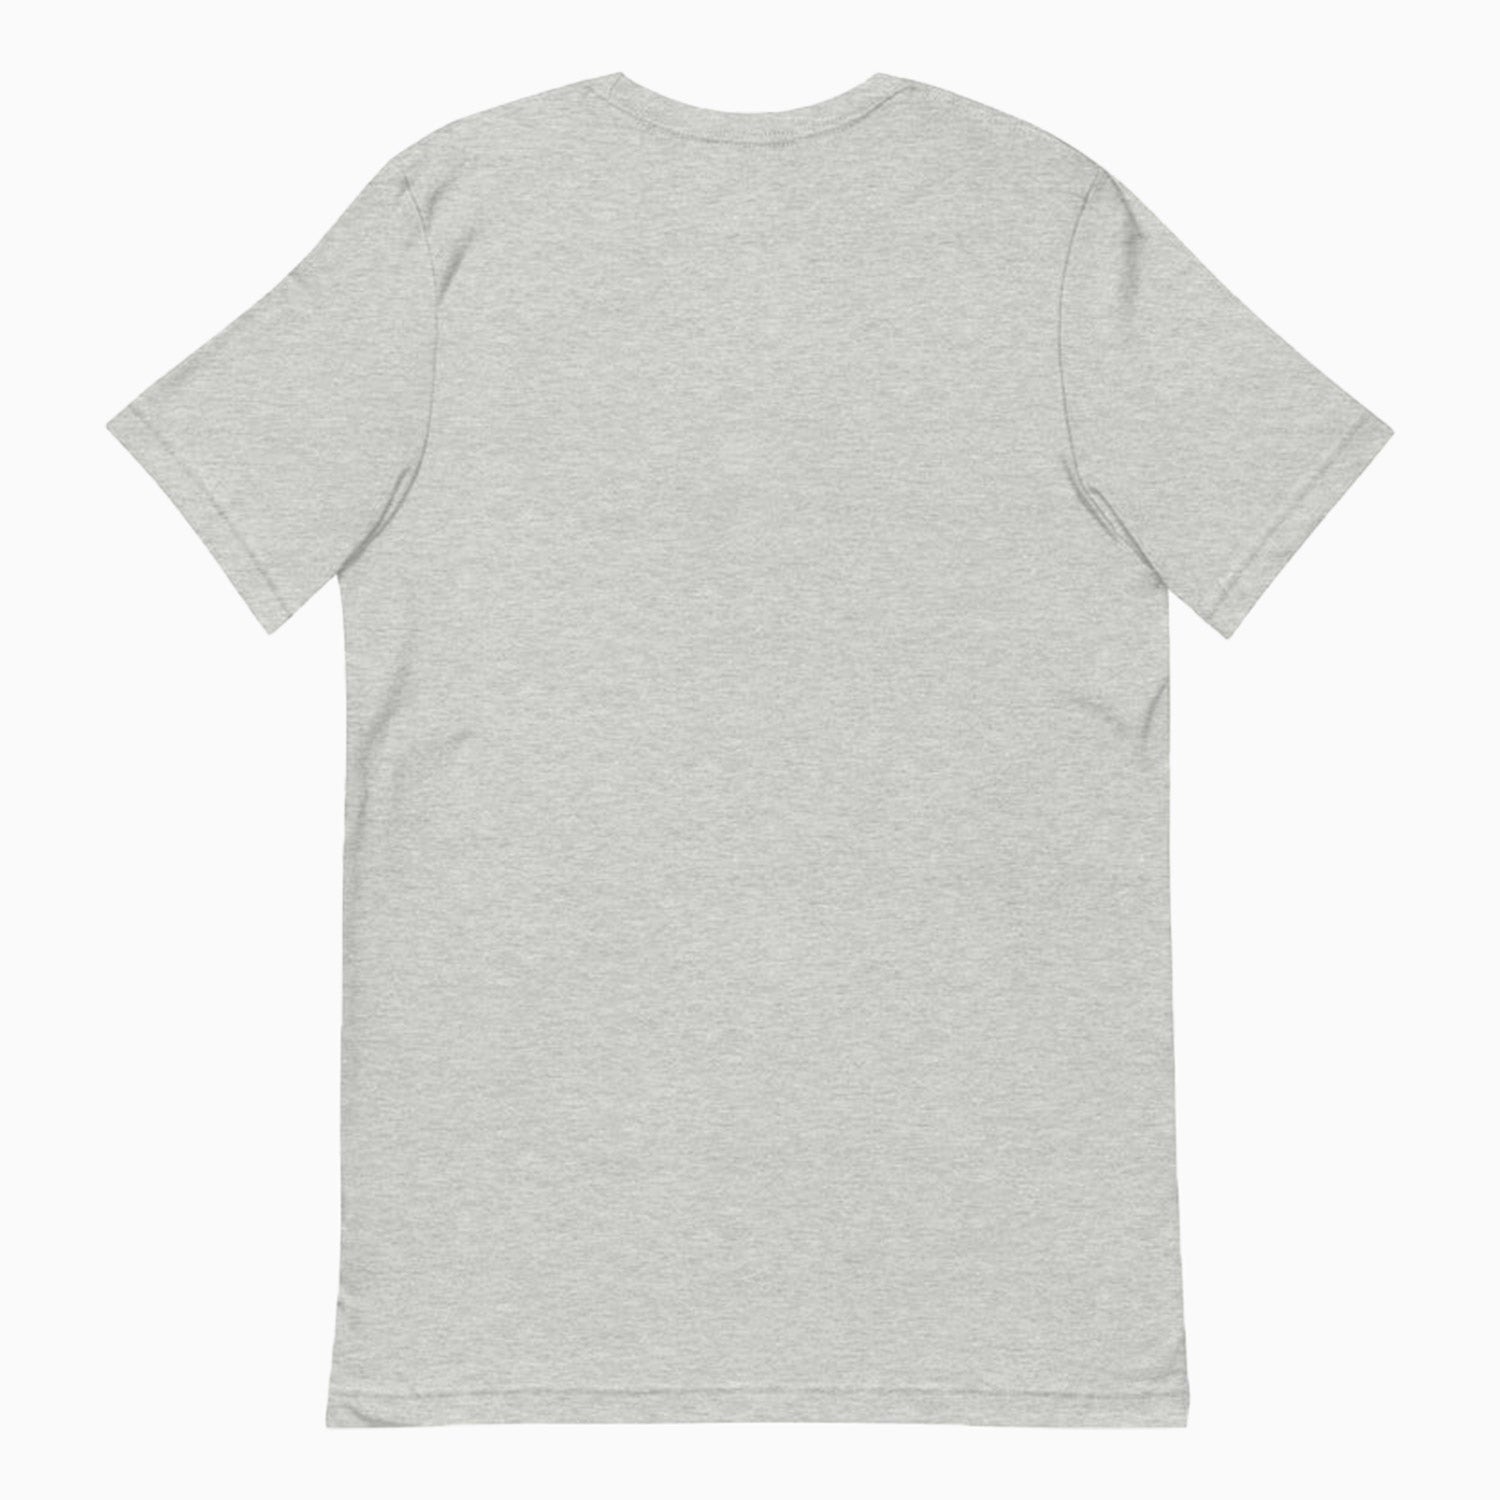 savar-mens-play-boy-grey-white-t-shirt-svr-01